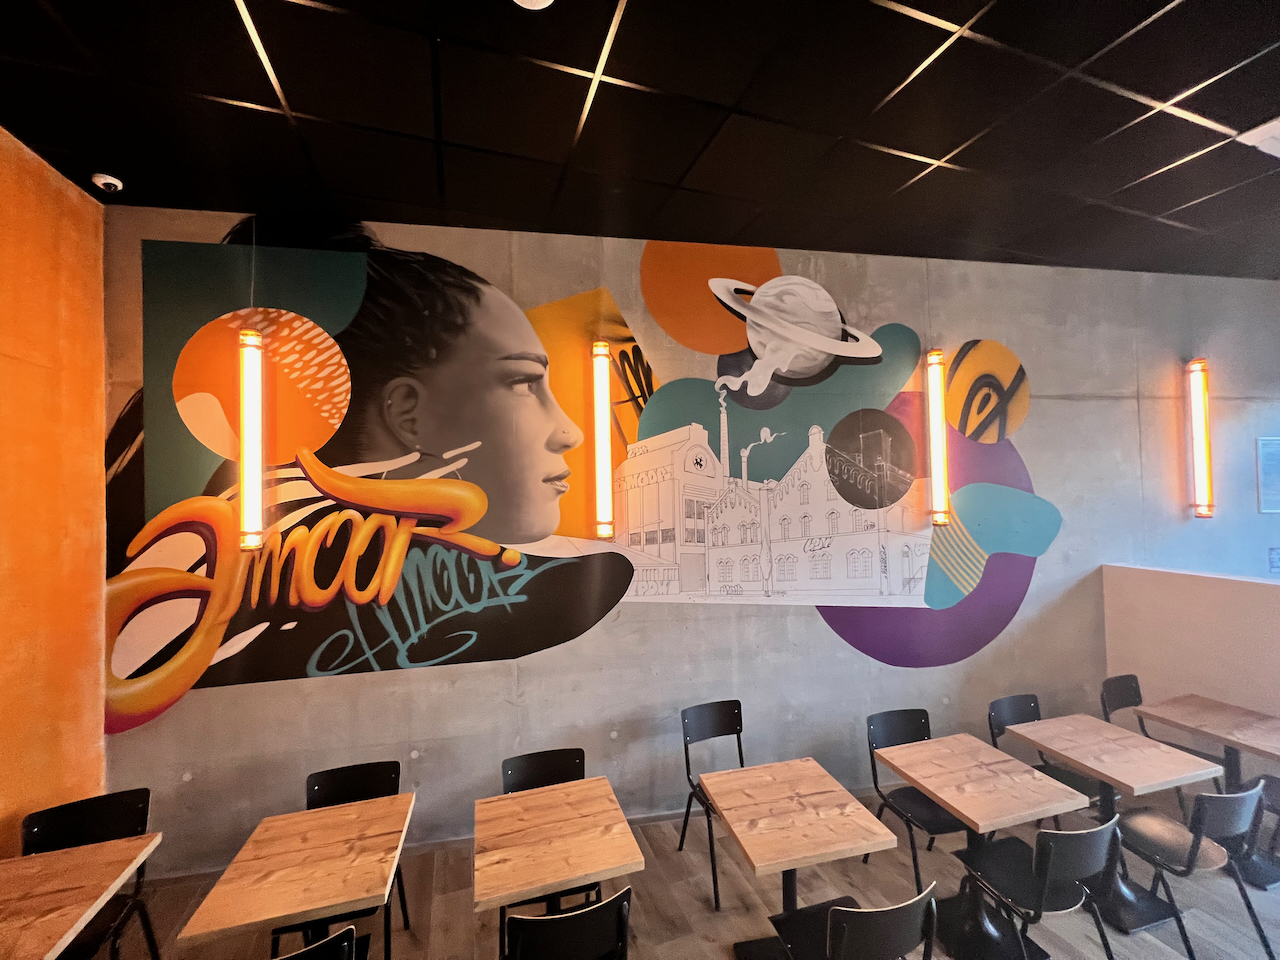 Décoration fresque graffiti street art urbain restaurant burger LPDM